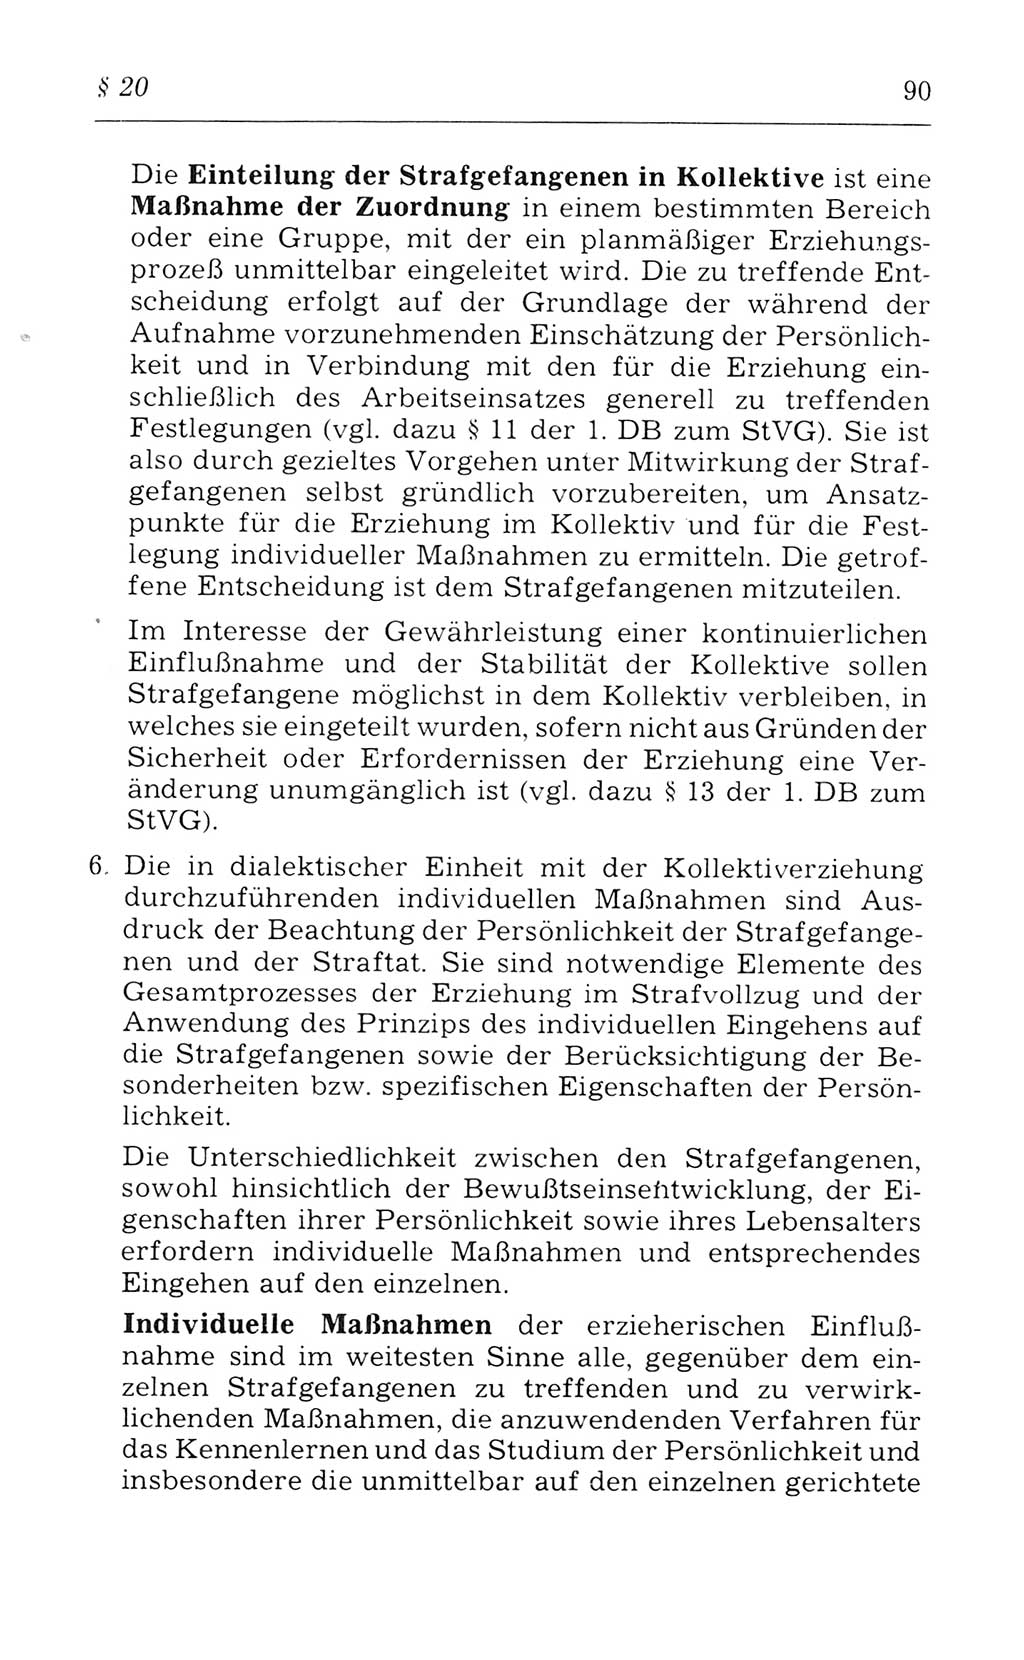 Kommentar zum Strafvollzugsgesetz [(StVG) Deutsche Demokratische Republik (DDR)] 1980, Seite 90 (Komm. StVG DDR 1980, S. 90)